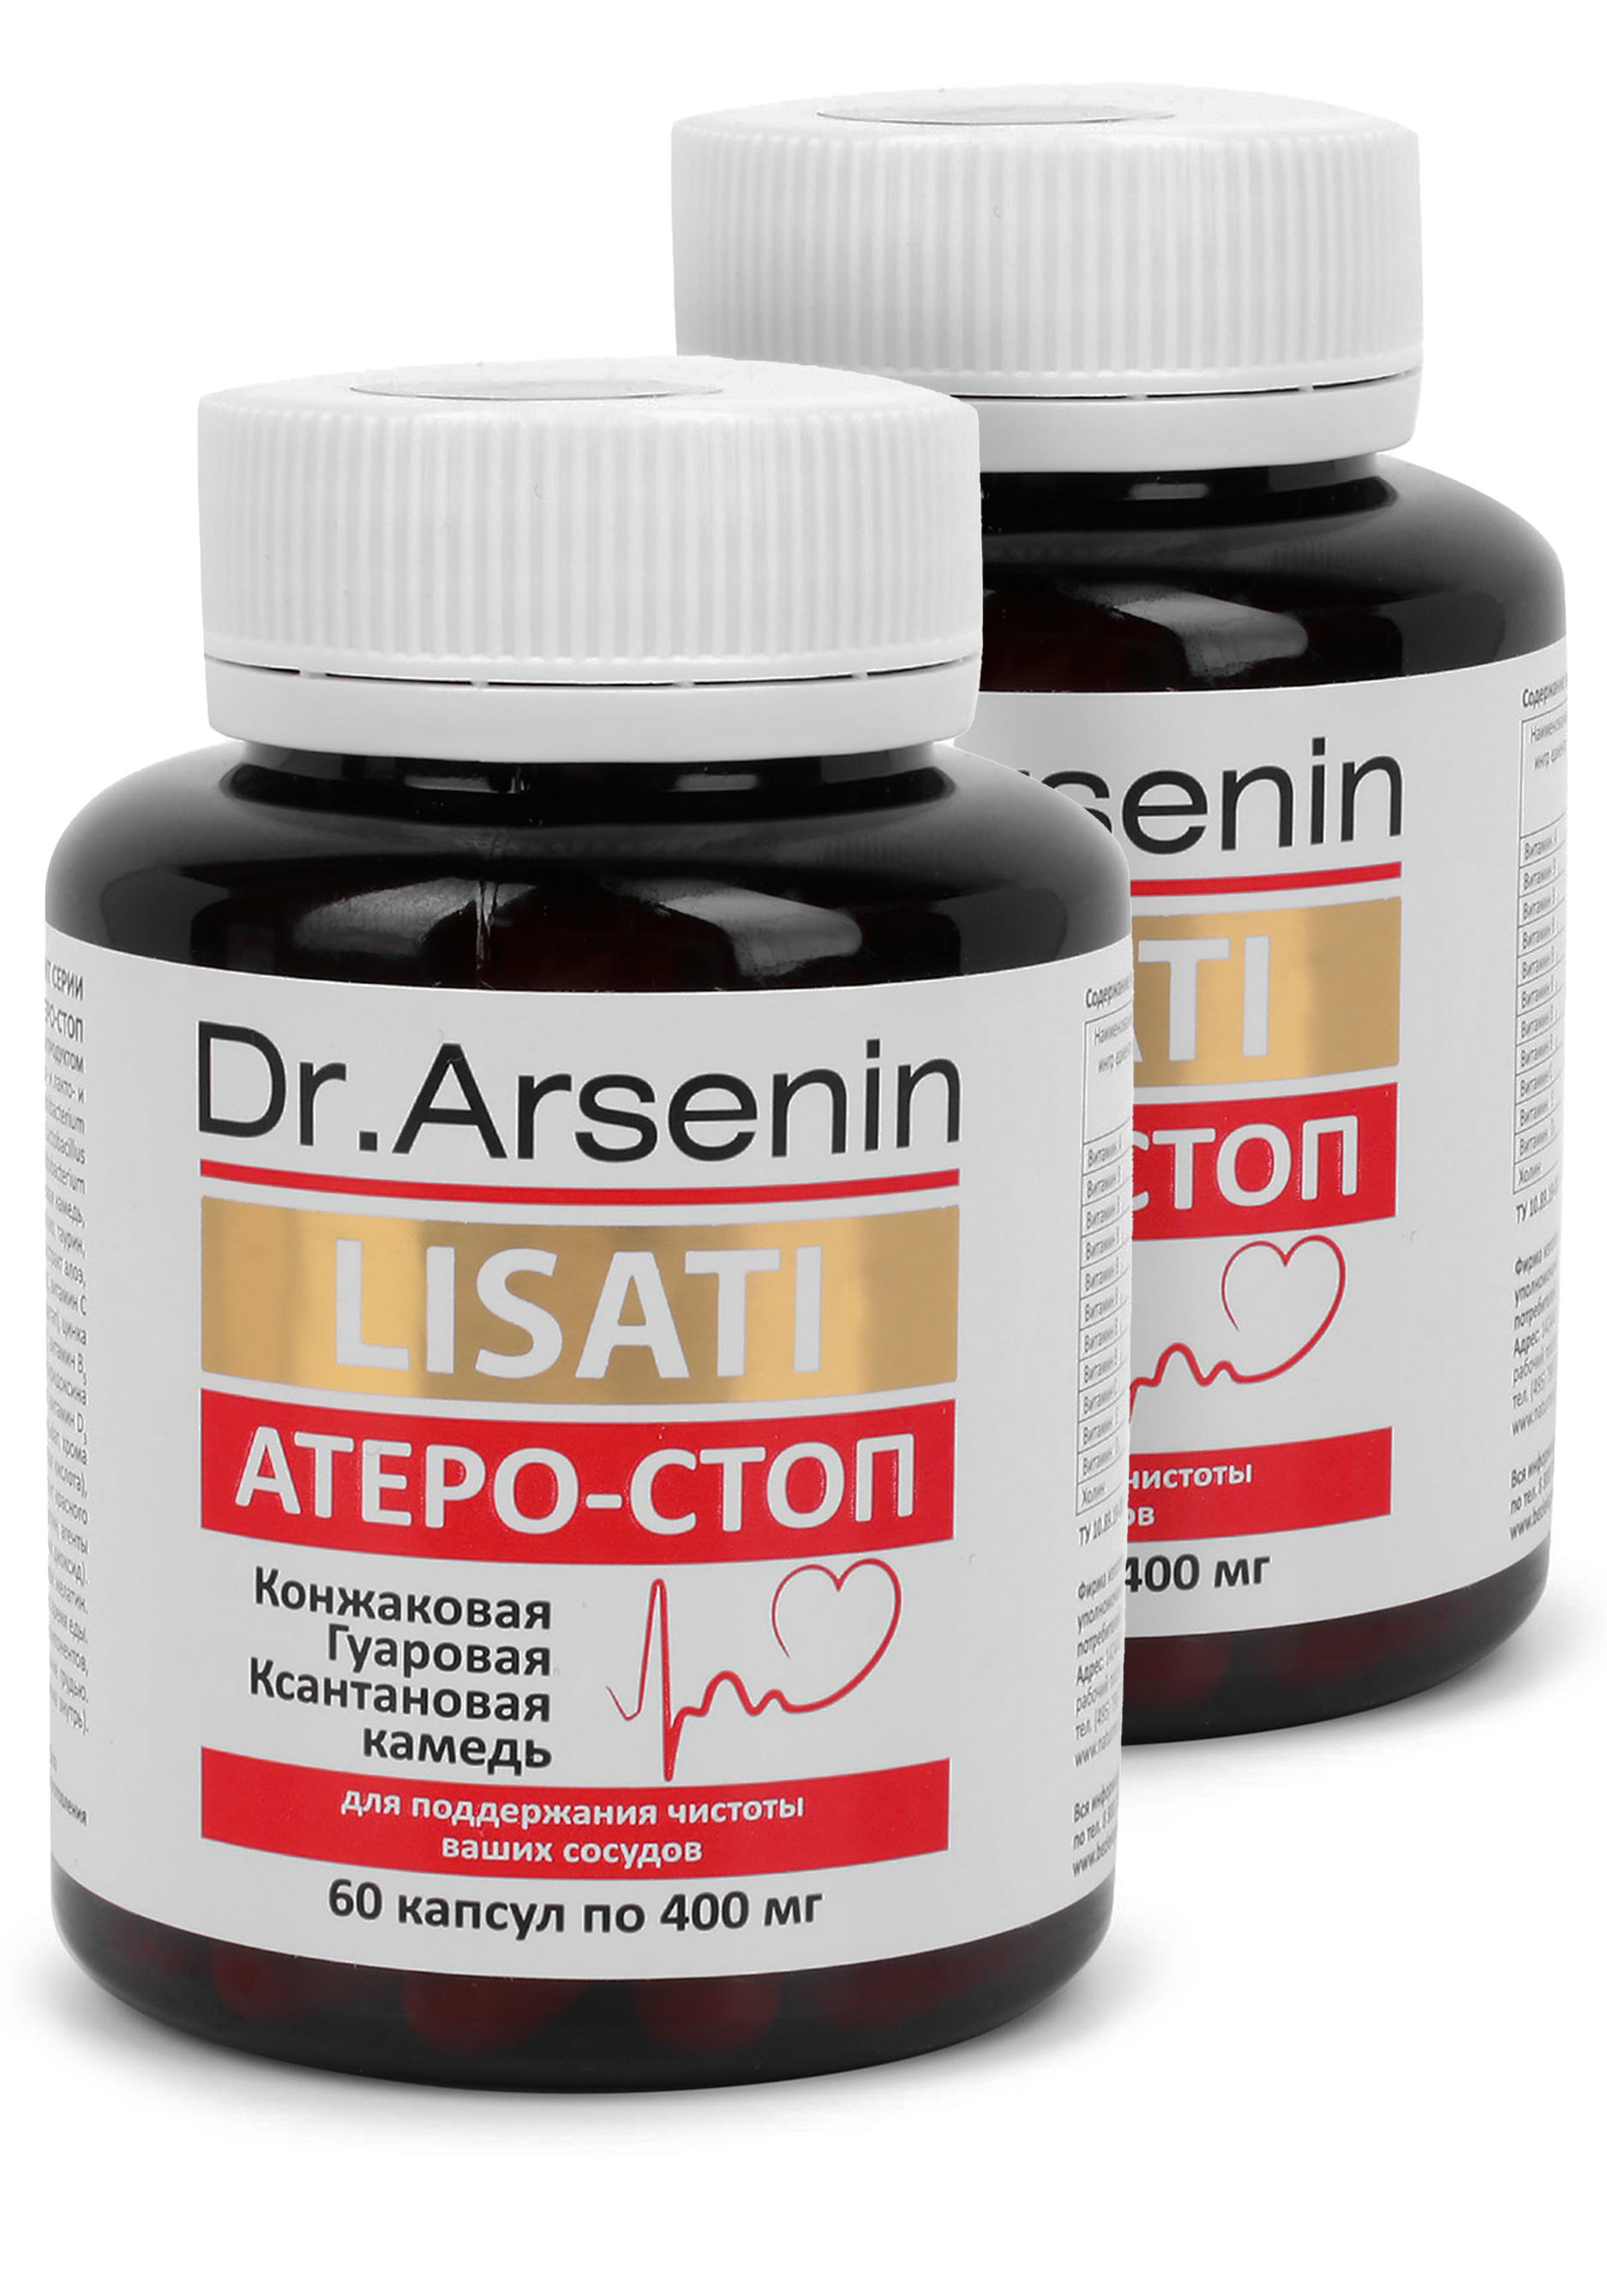 Капсулы Атеро-Стоп с метабиотиками, 2 шт. атеро стоп lisati dr arsenin 60 шт капсулы